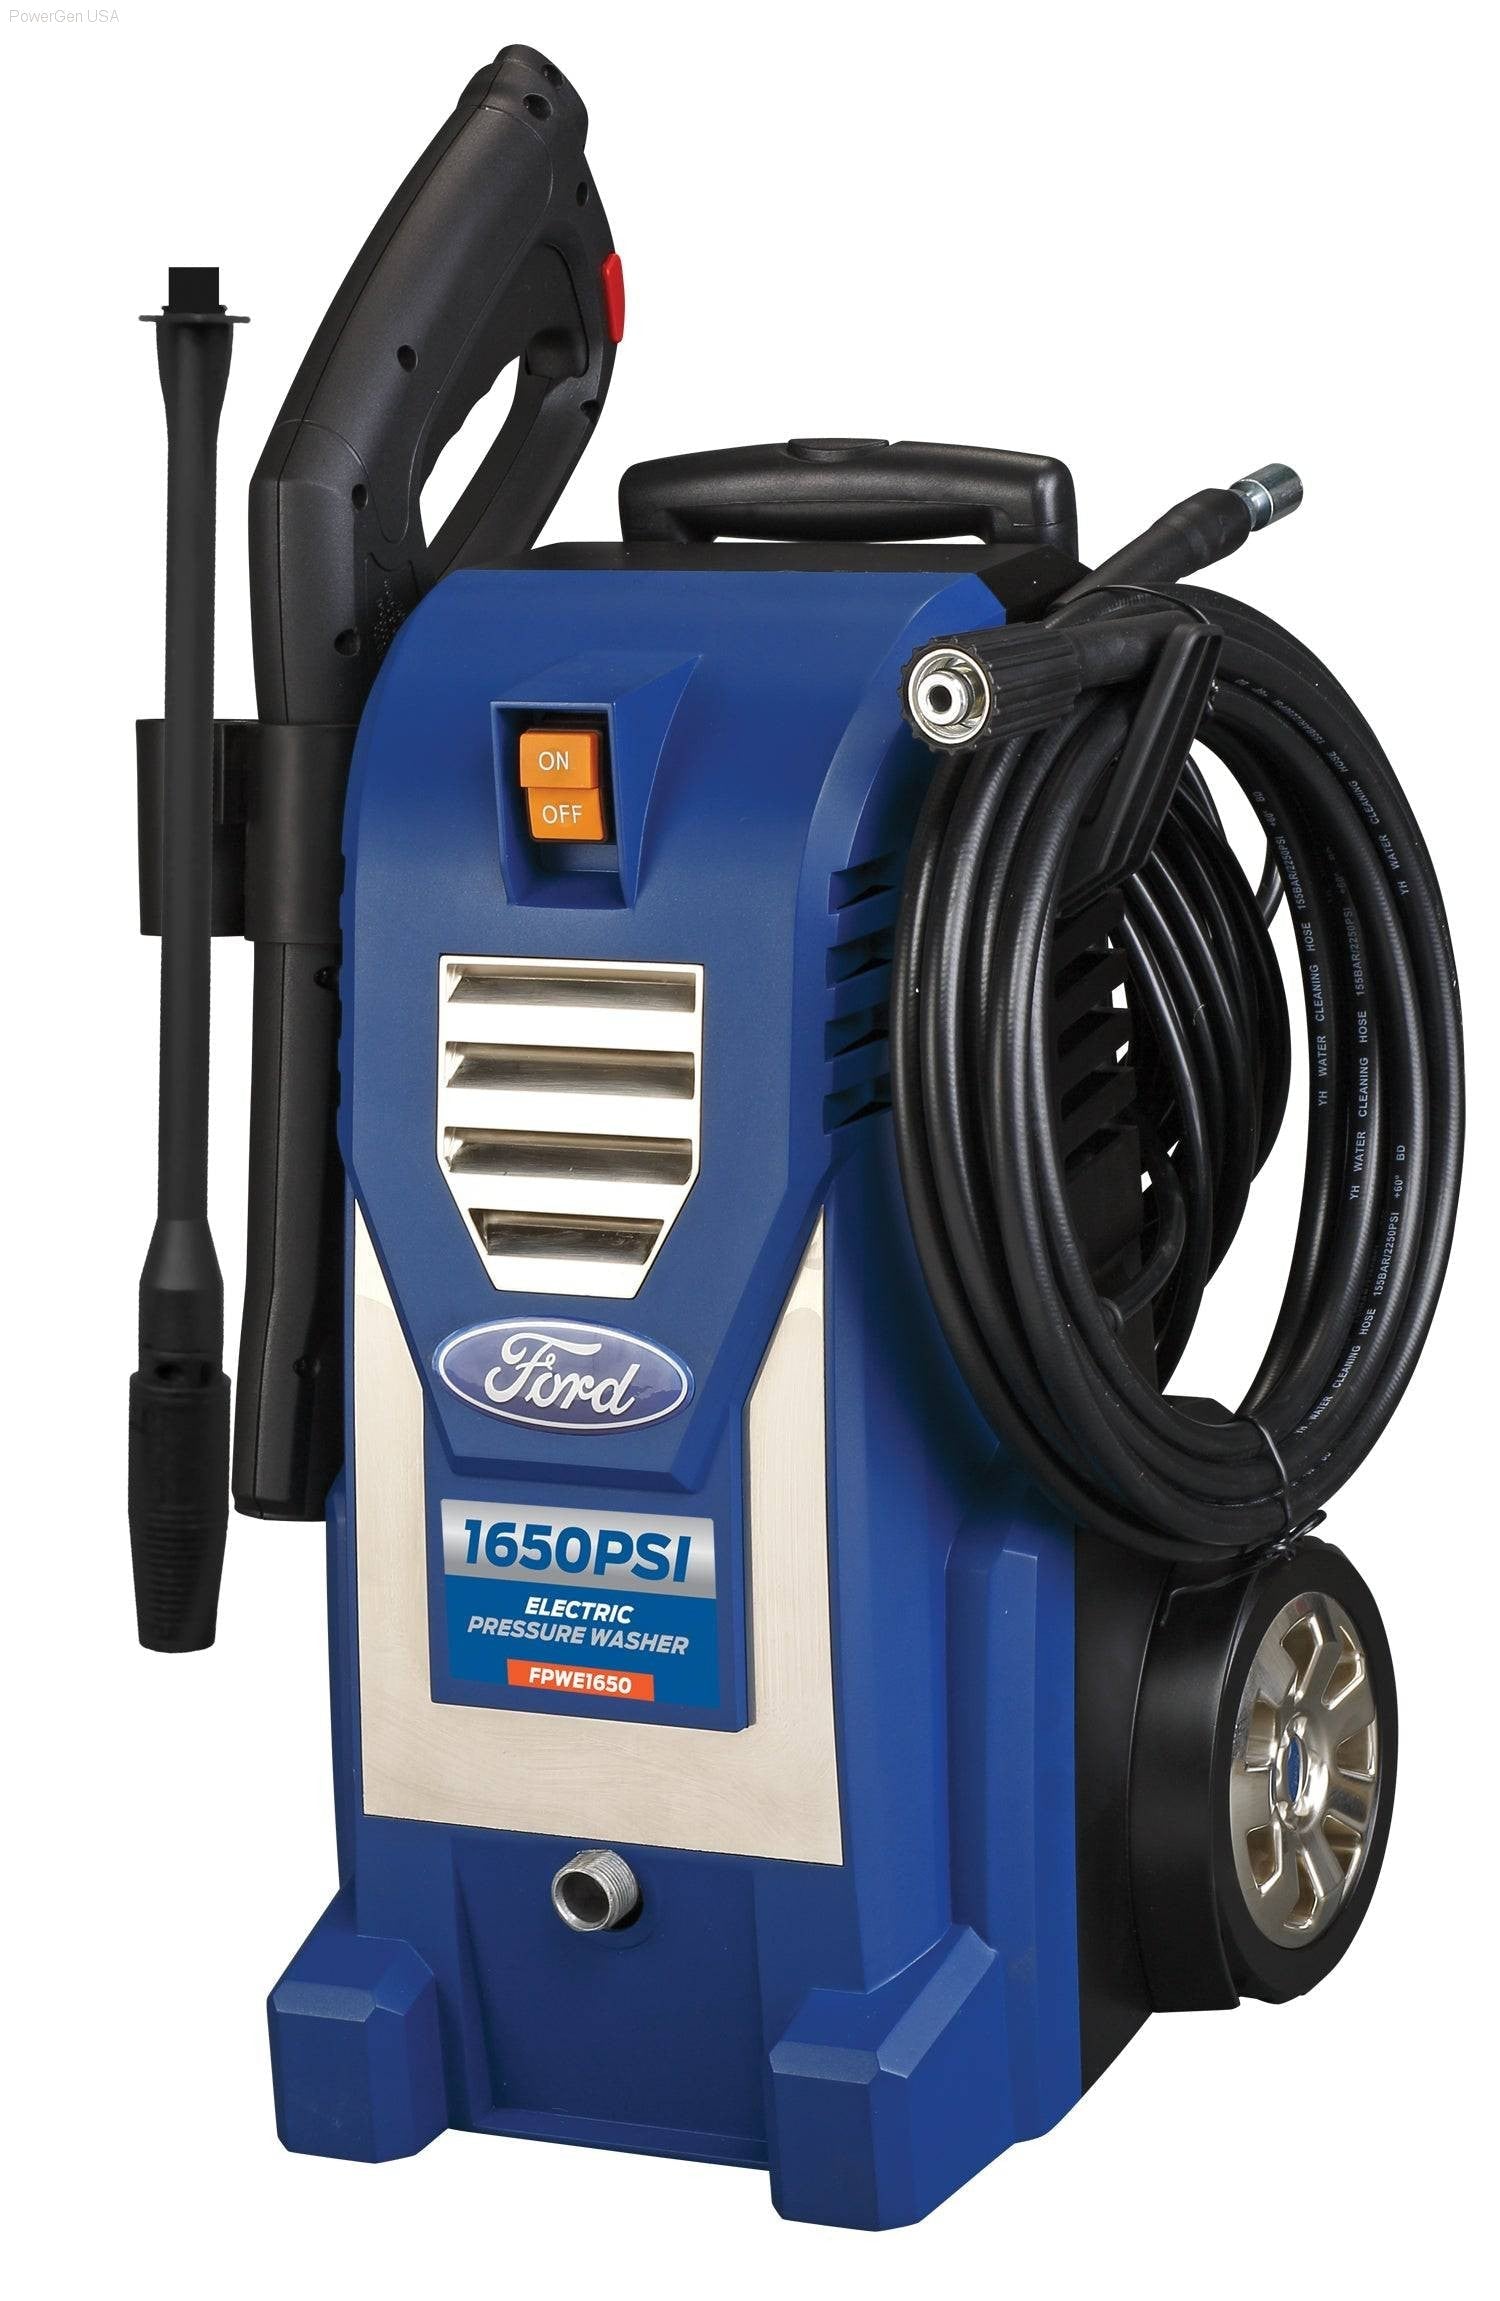 Pressure Washers - Ford-FPWE1650 Electric 1650 PSI Pressure Washer